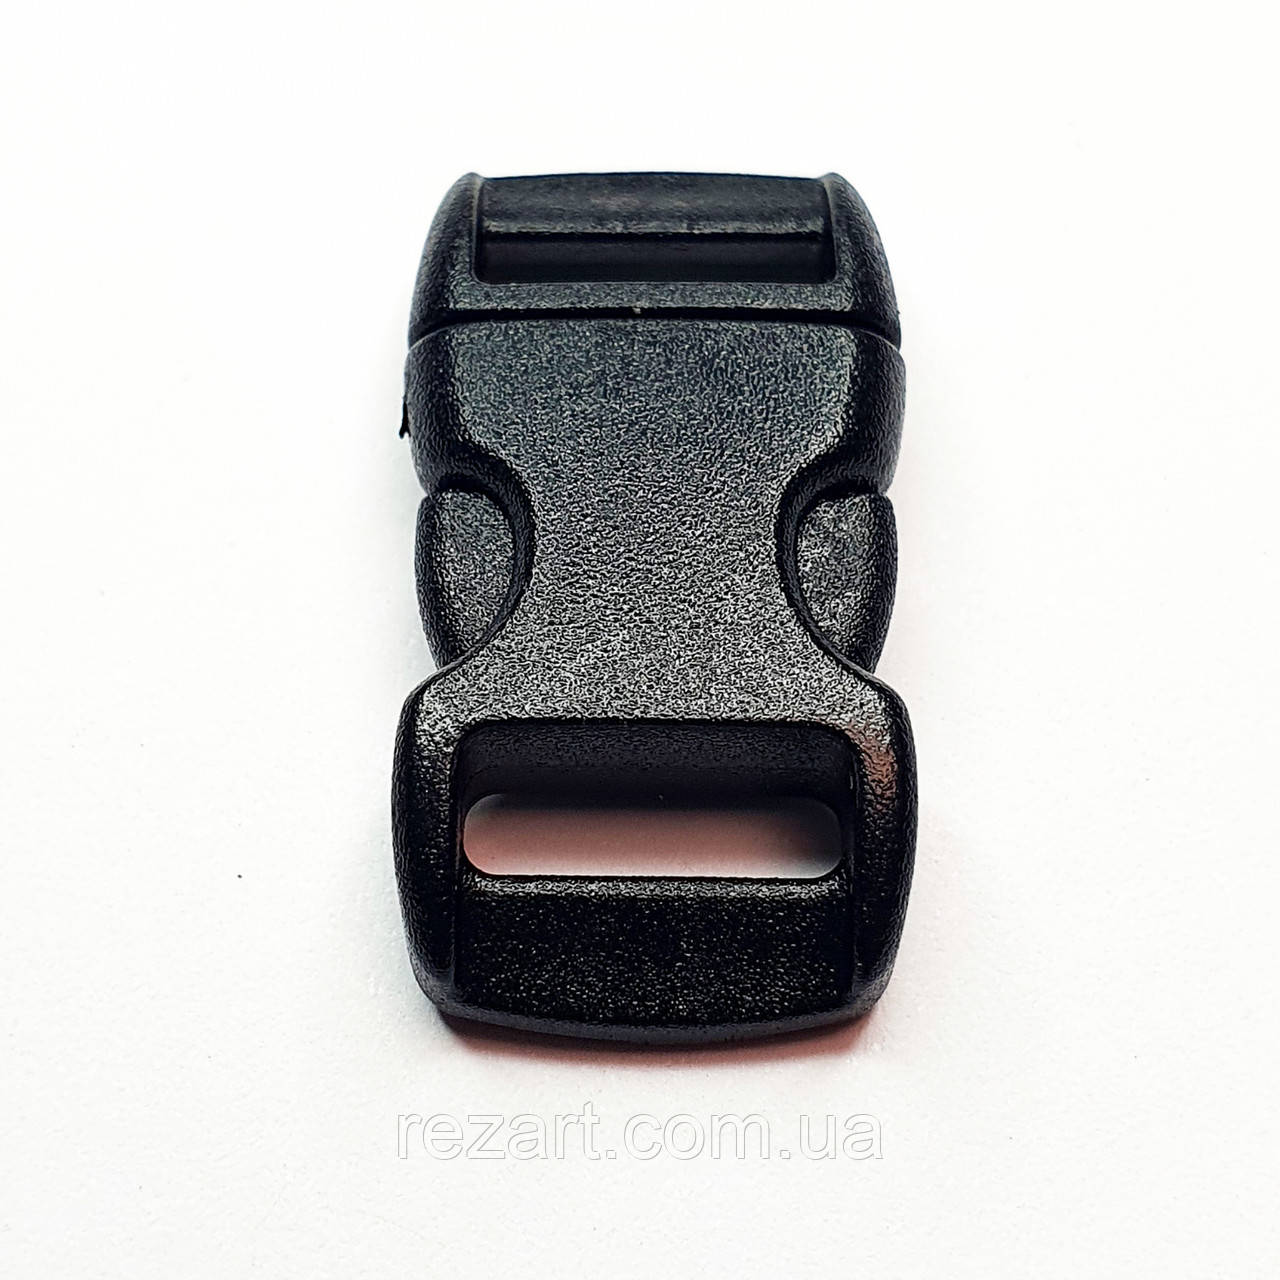 Фастекс 10 мм (застібка) для браслета. Пластик чорний